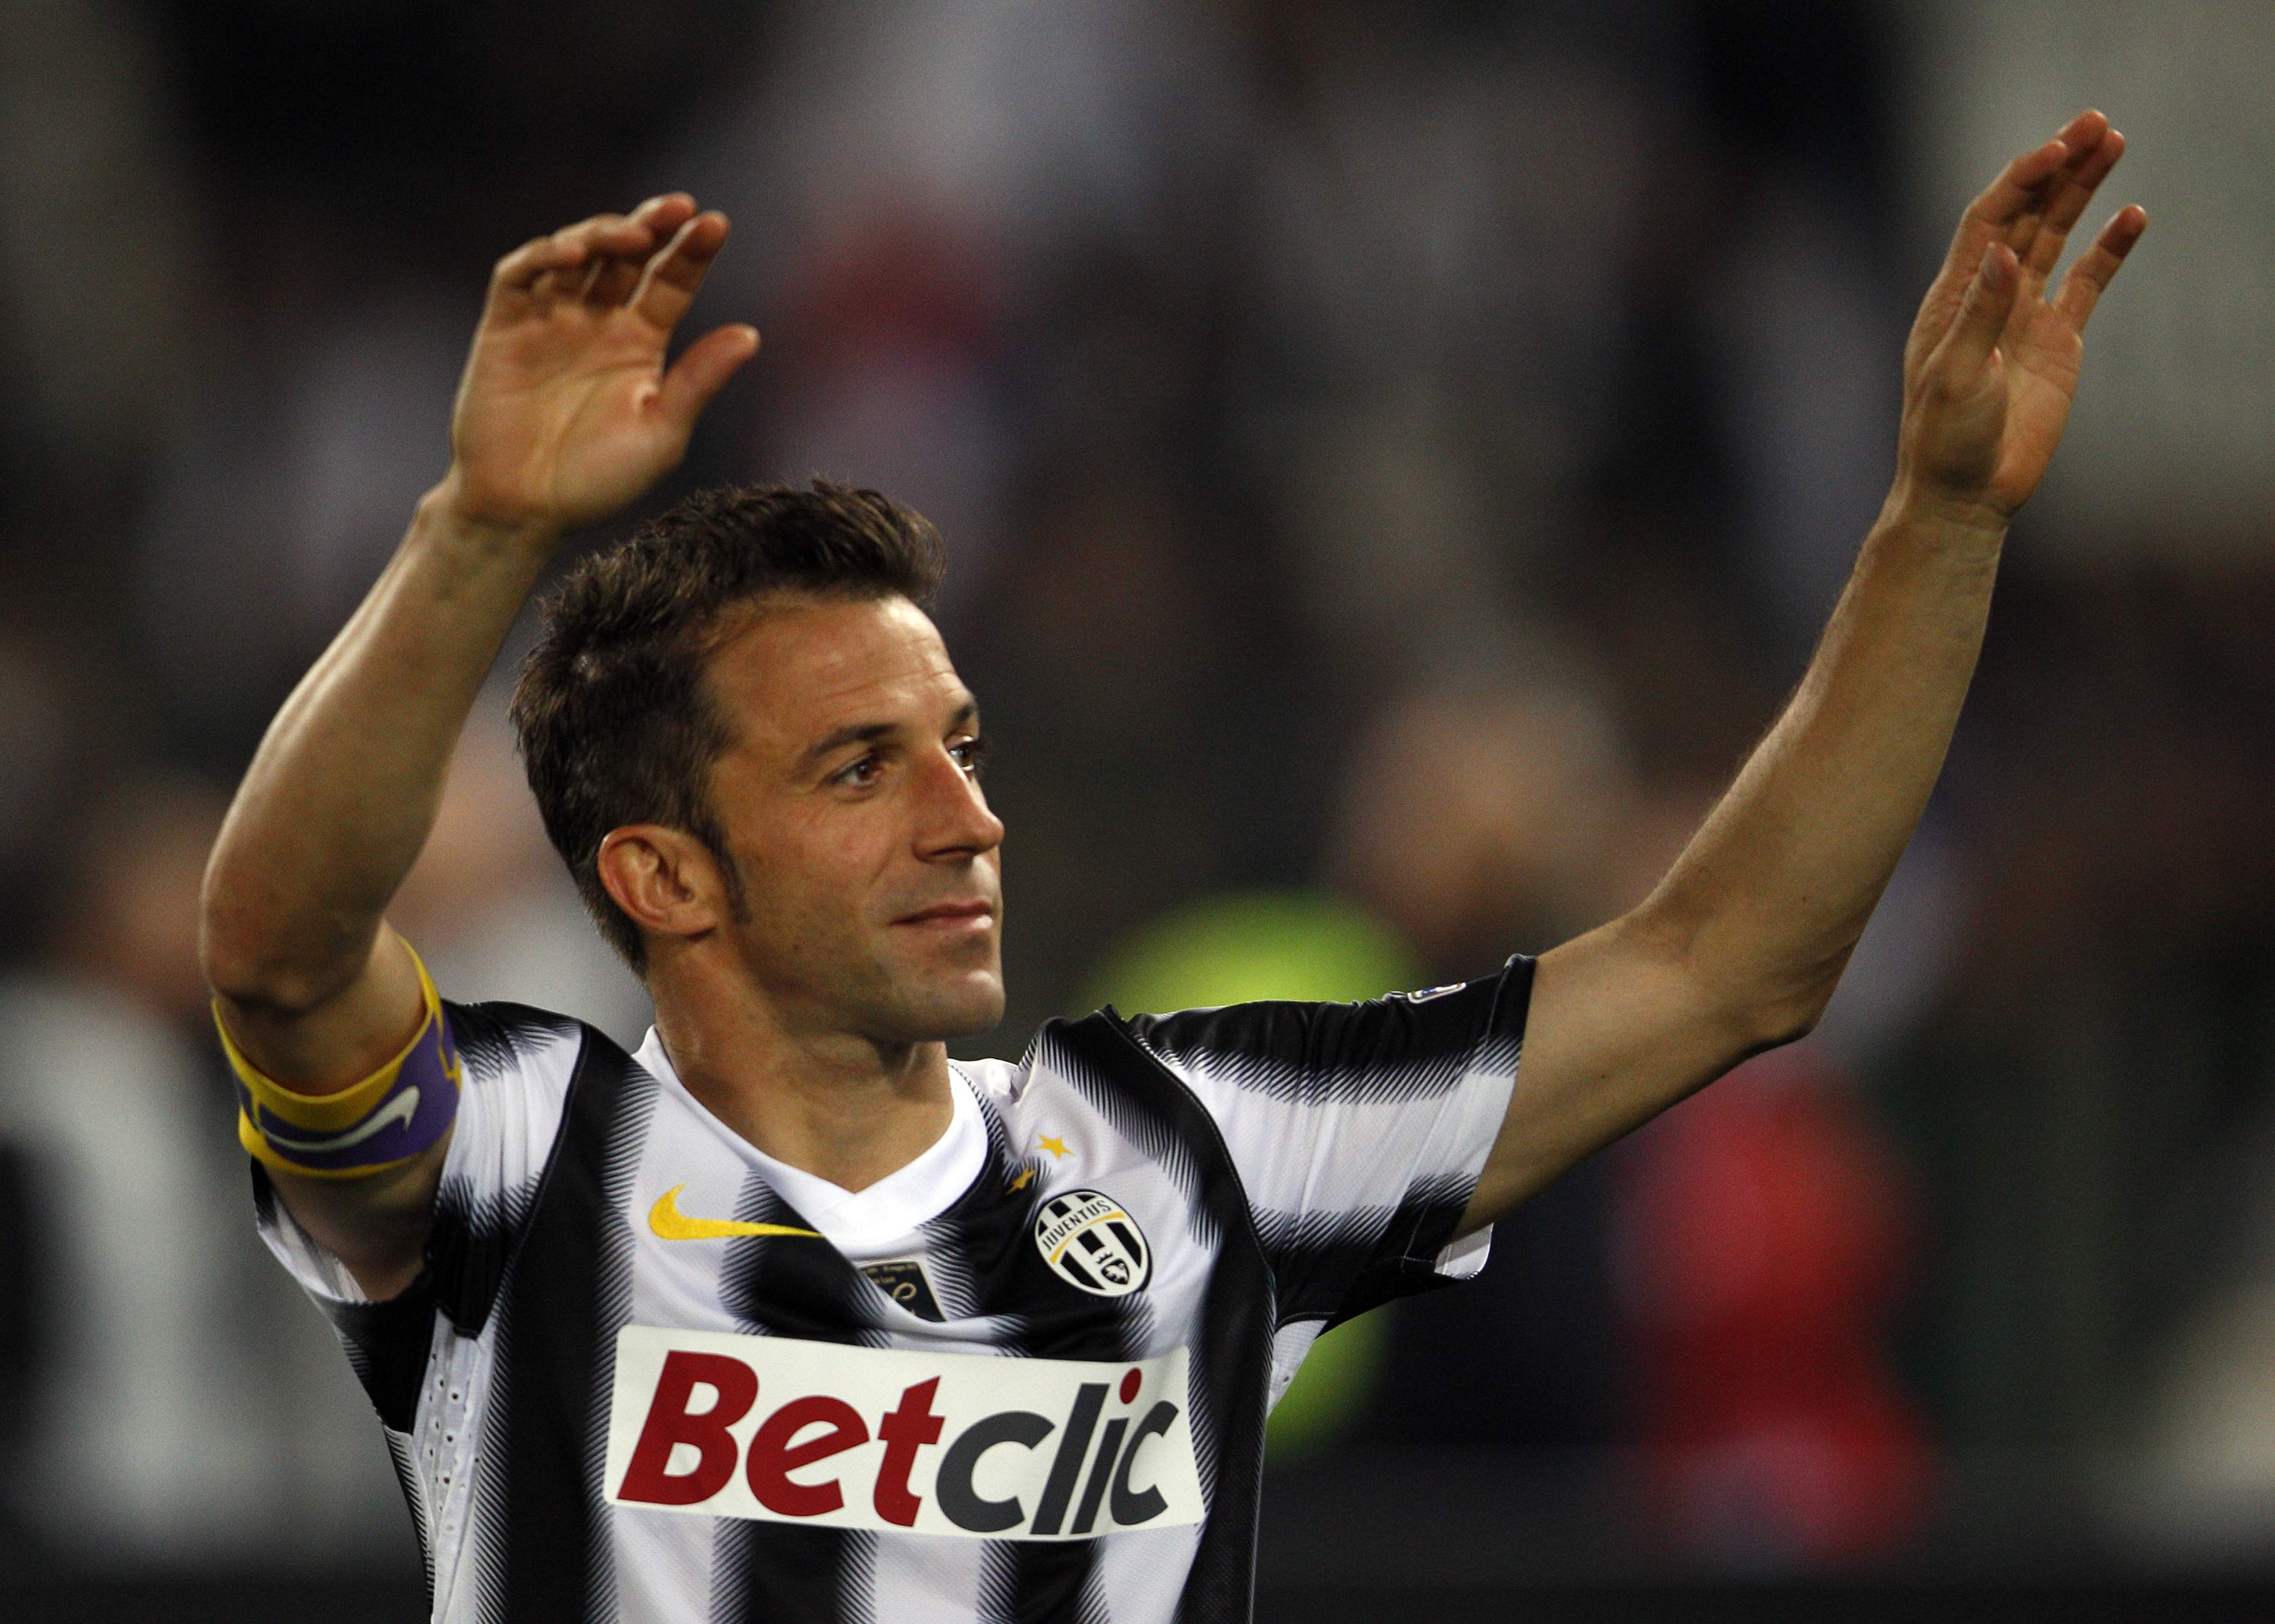 Alessandro Del Piero - Player profile